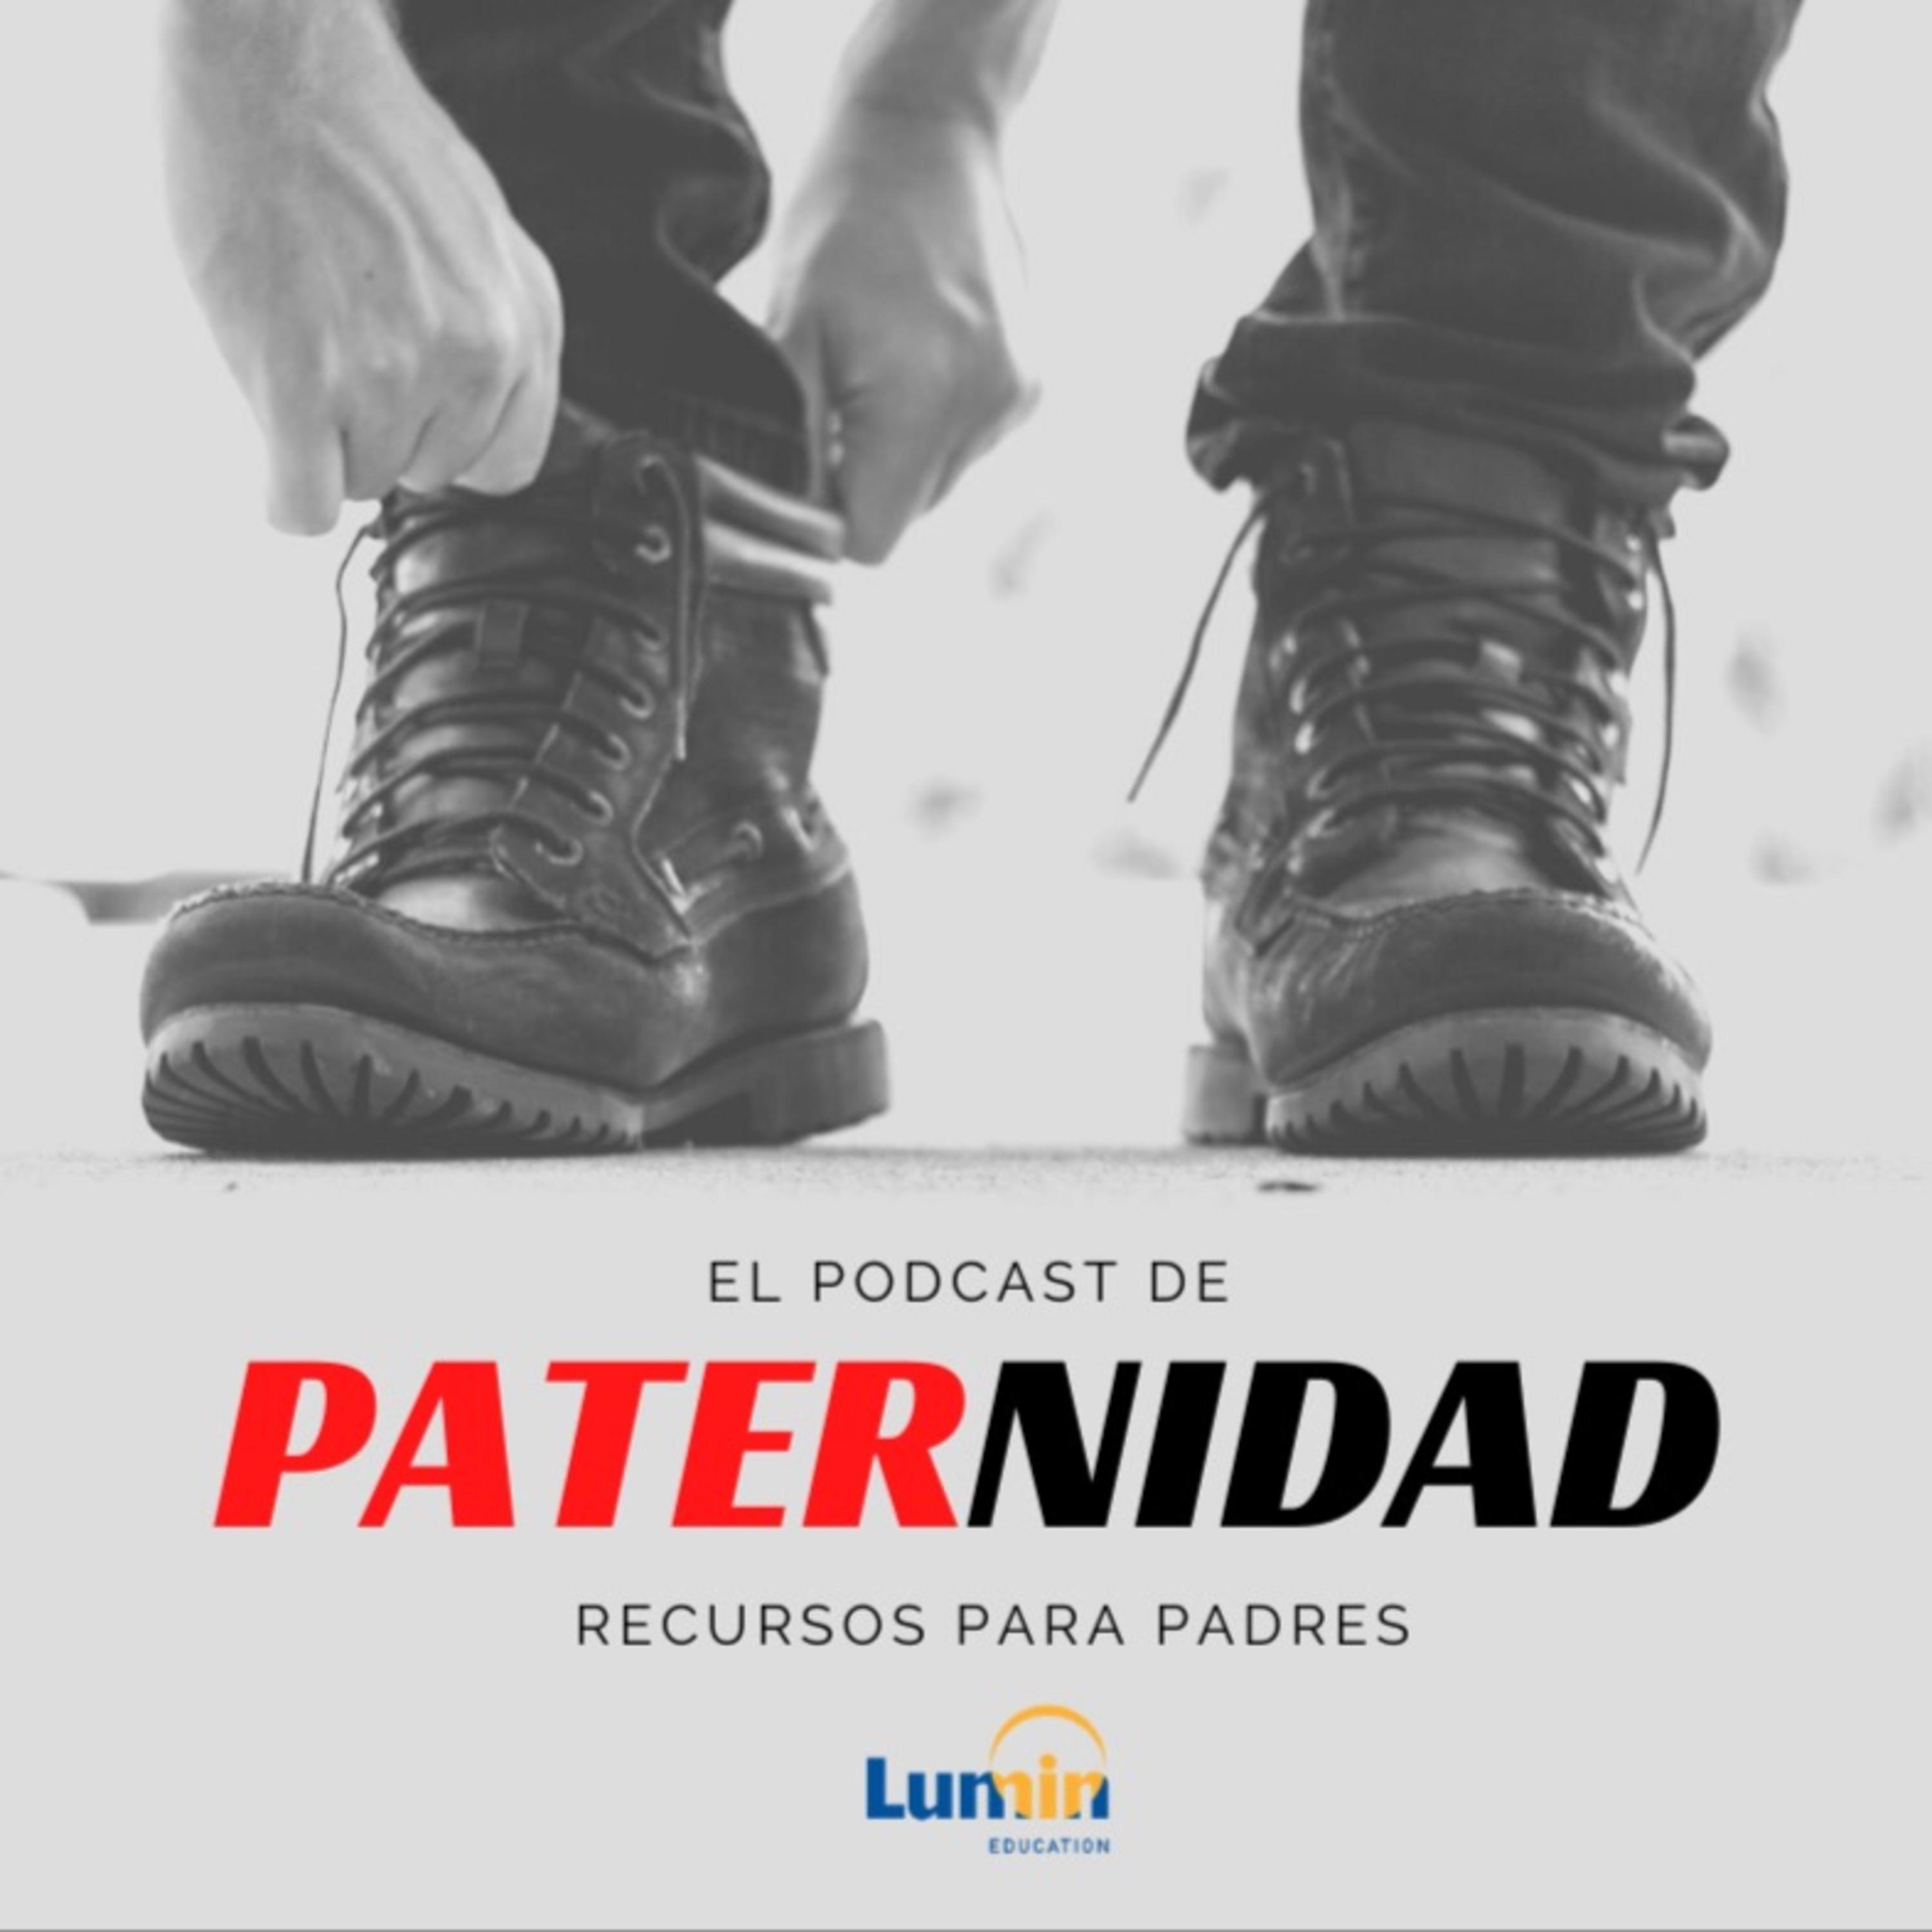 El Podcast de Paternidad